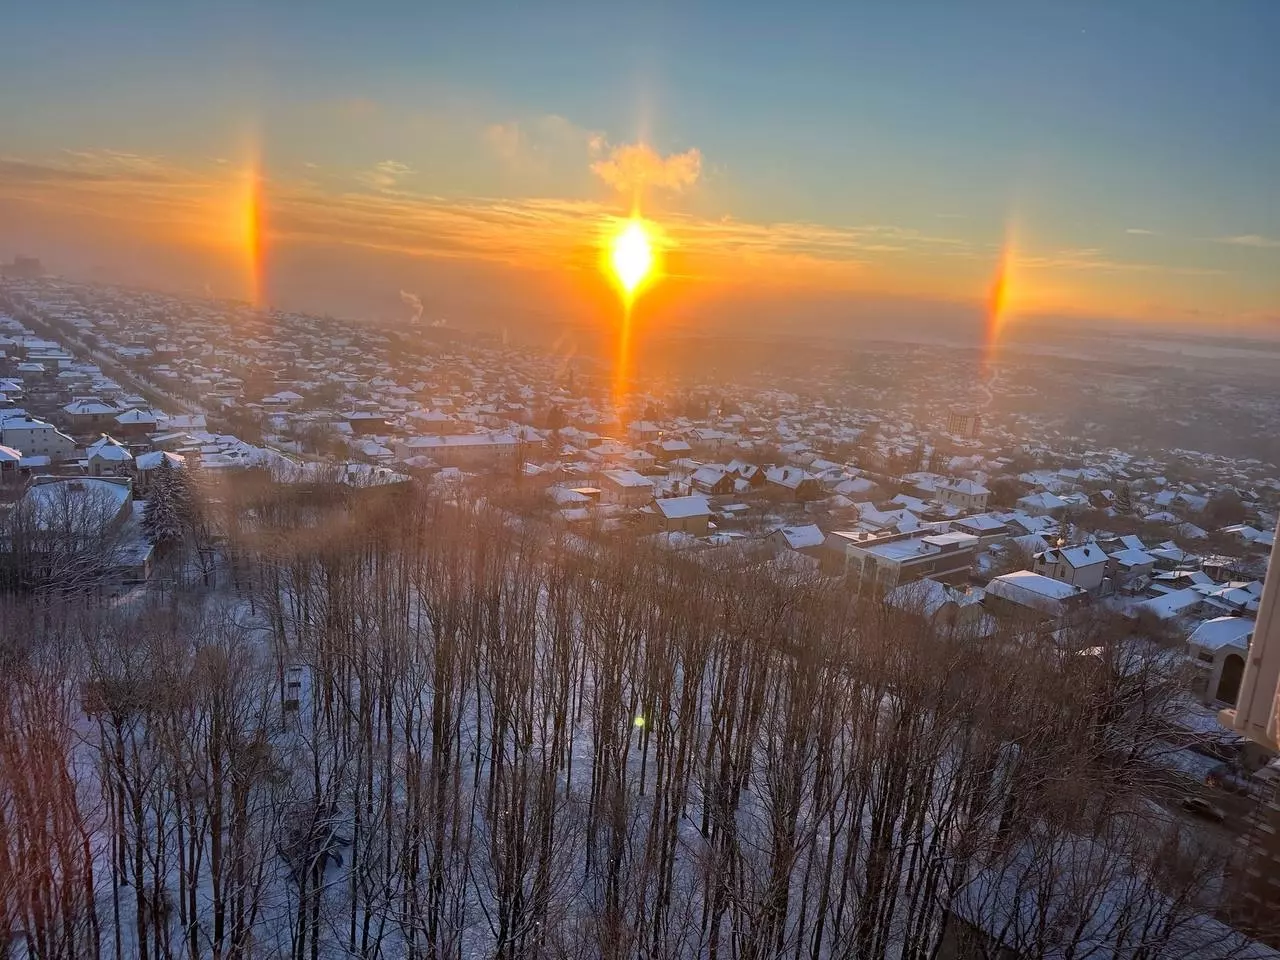 «Волшебное утро»: жителей Ставрополя восхитили три солнца в утреннем небе3